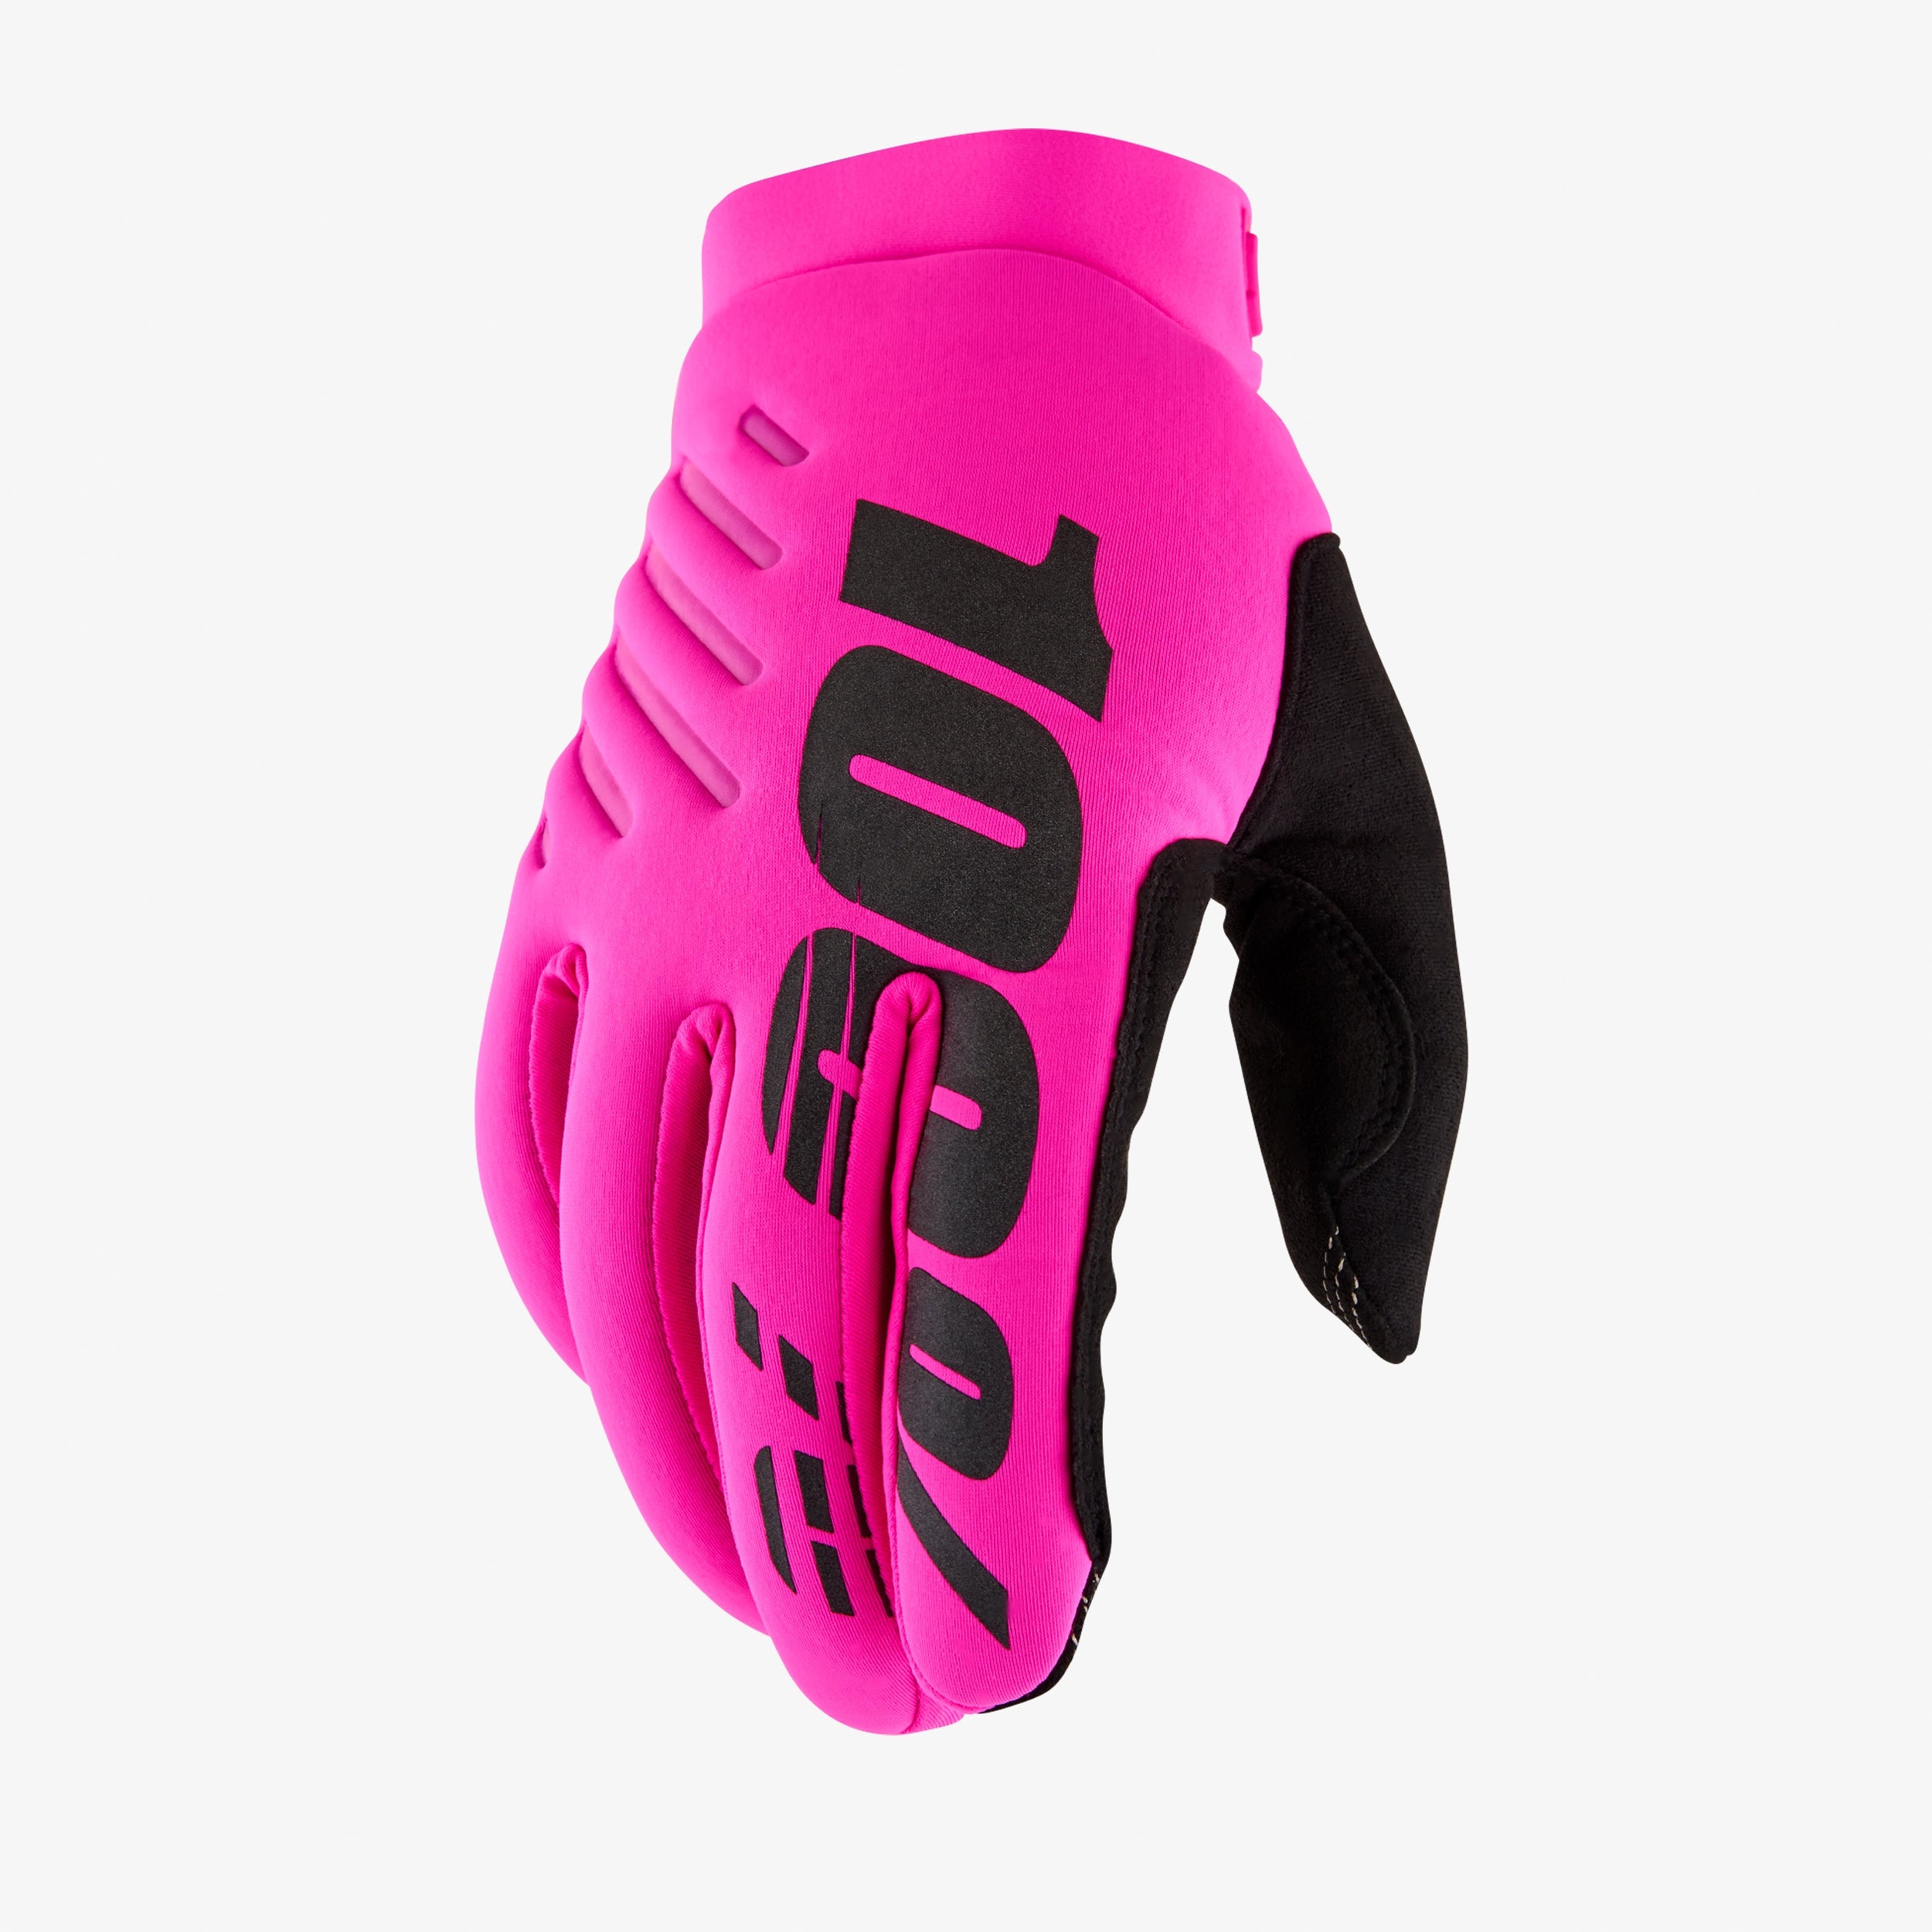 BRISKER Women's Glove - Neon Pink/Black